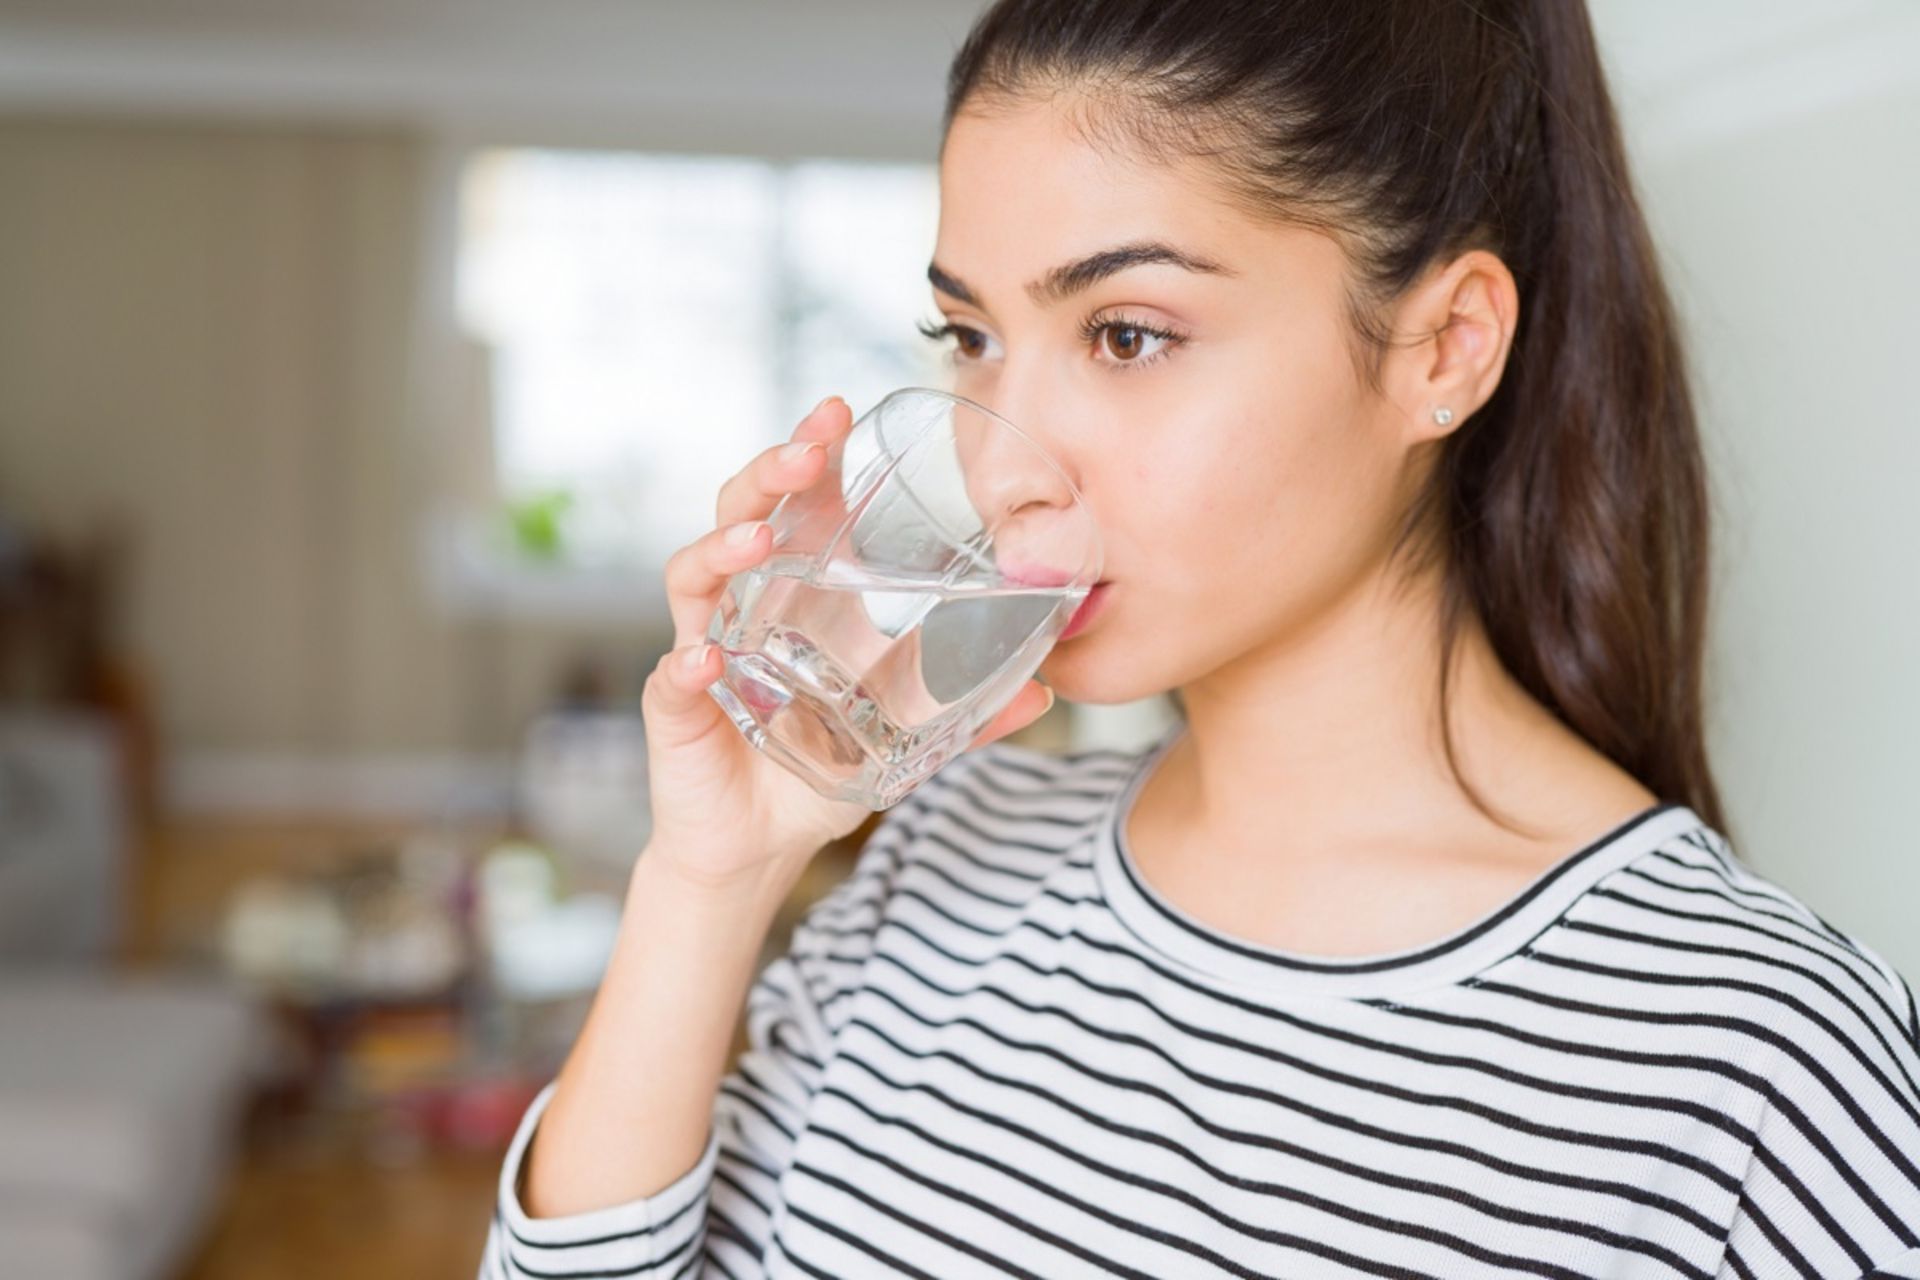 دختر جوان درحال نوشیدن یک لیوان آب است